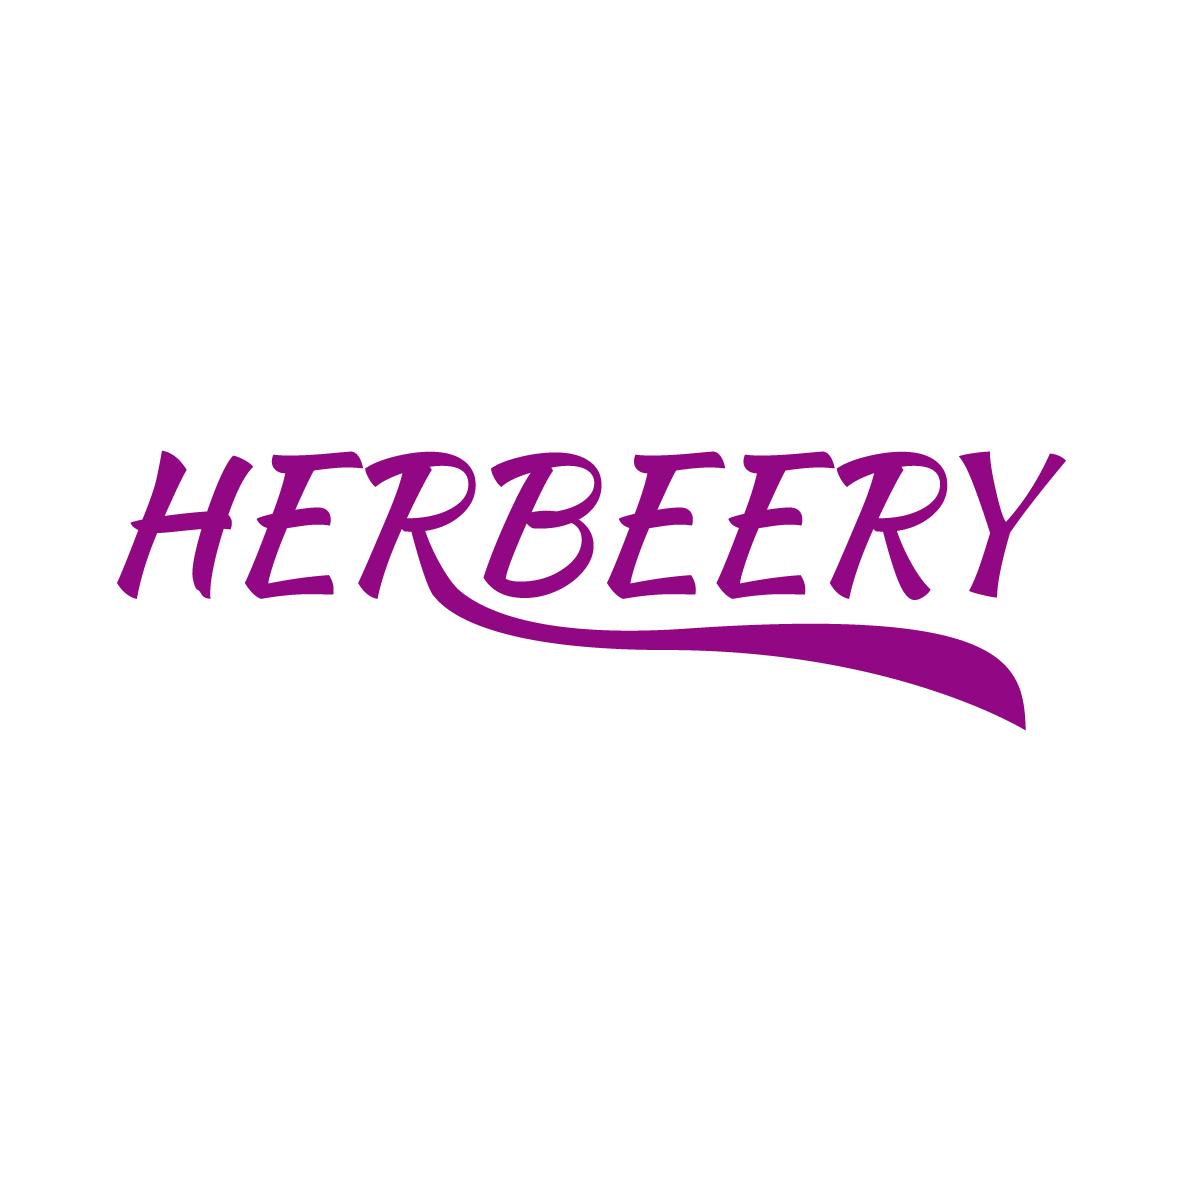 HERBEERY